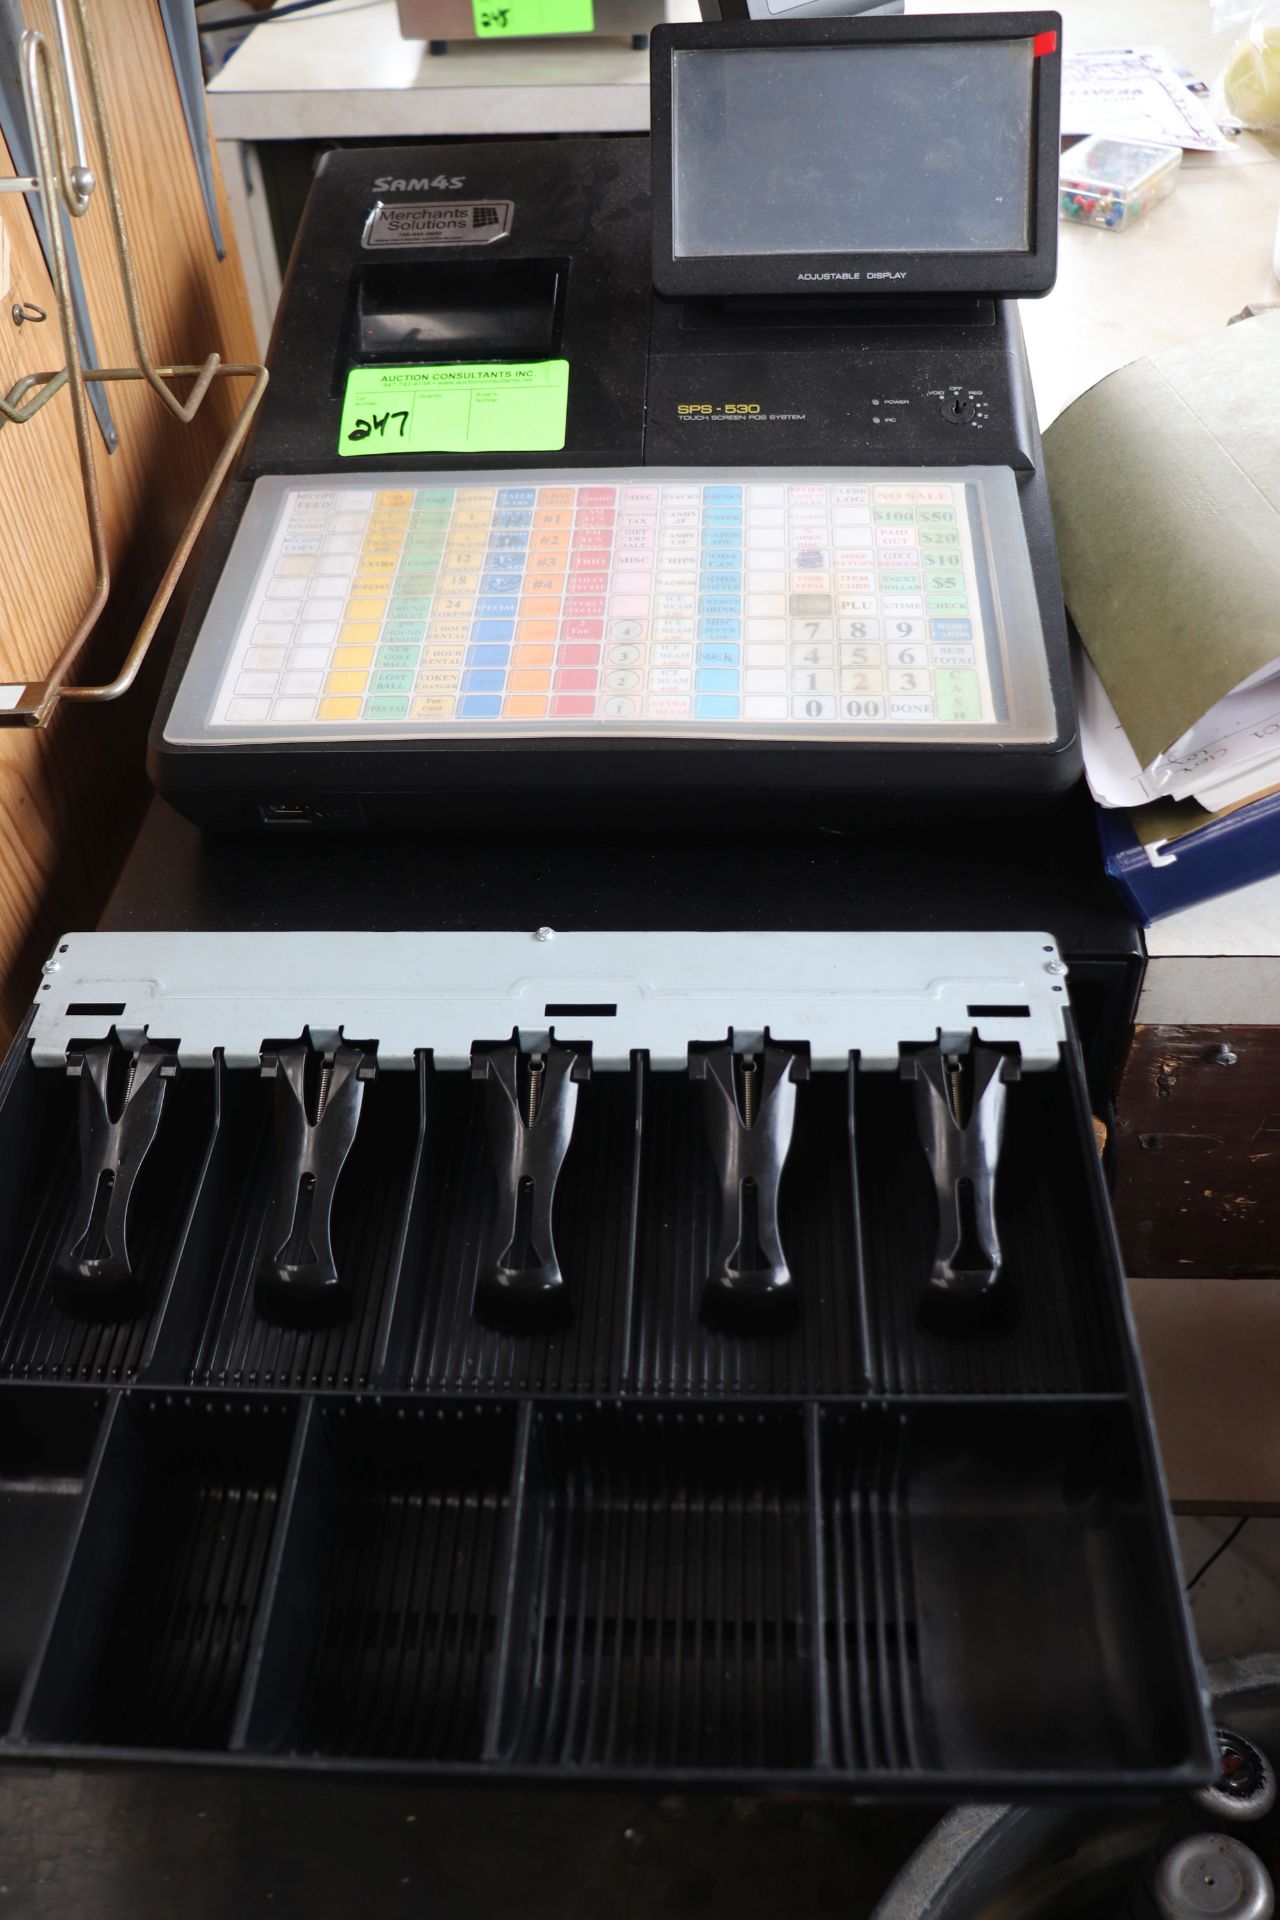 Sam 4S model SPS-530 cash register with cash drawer includes manual